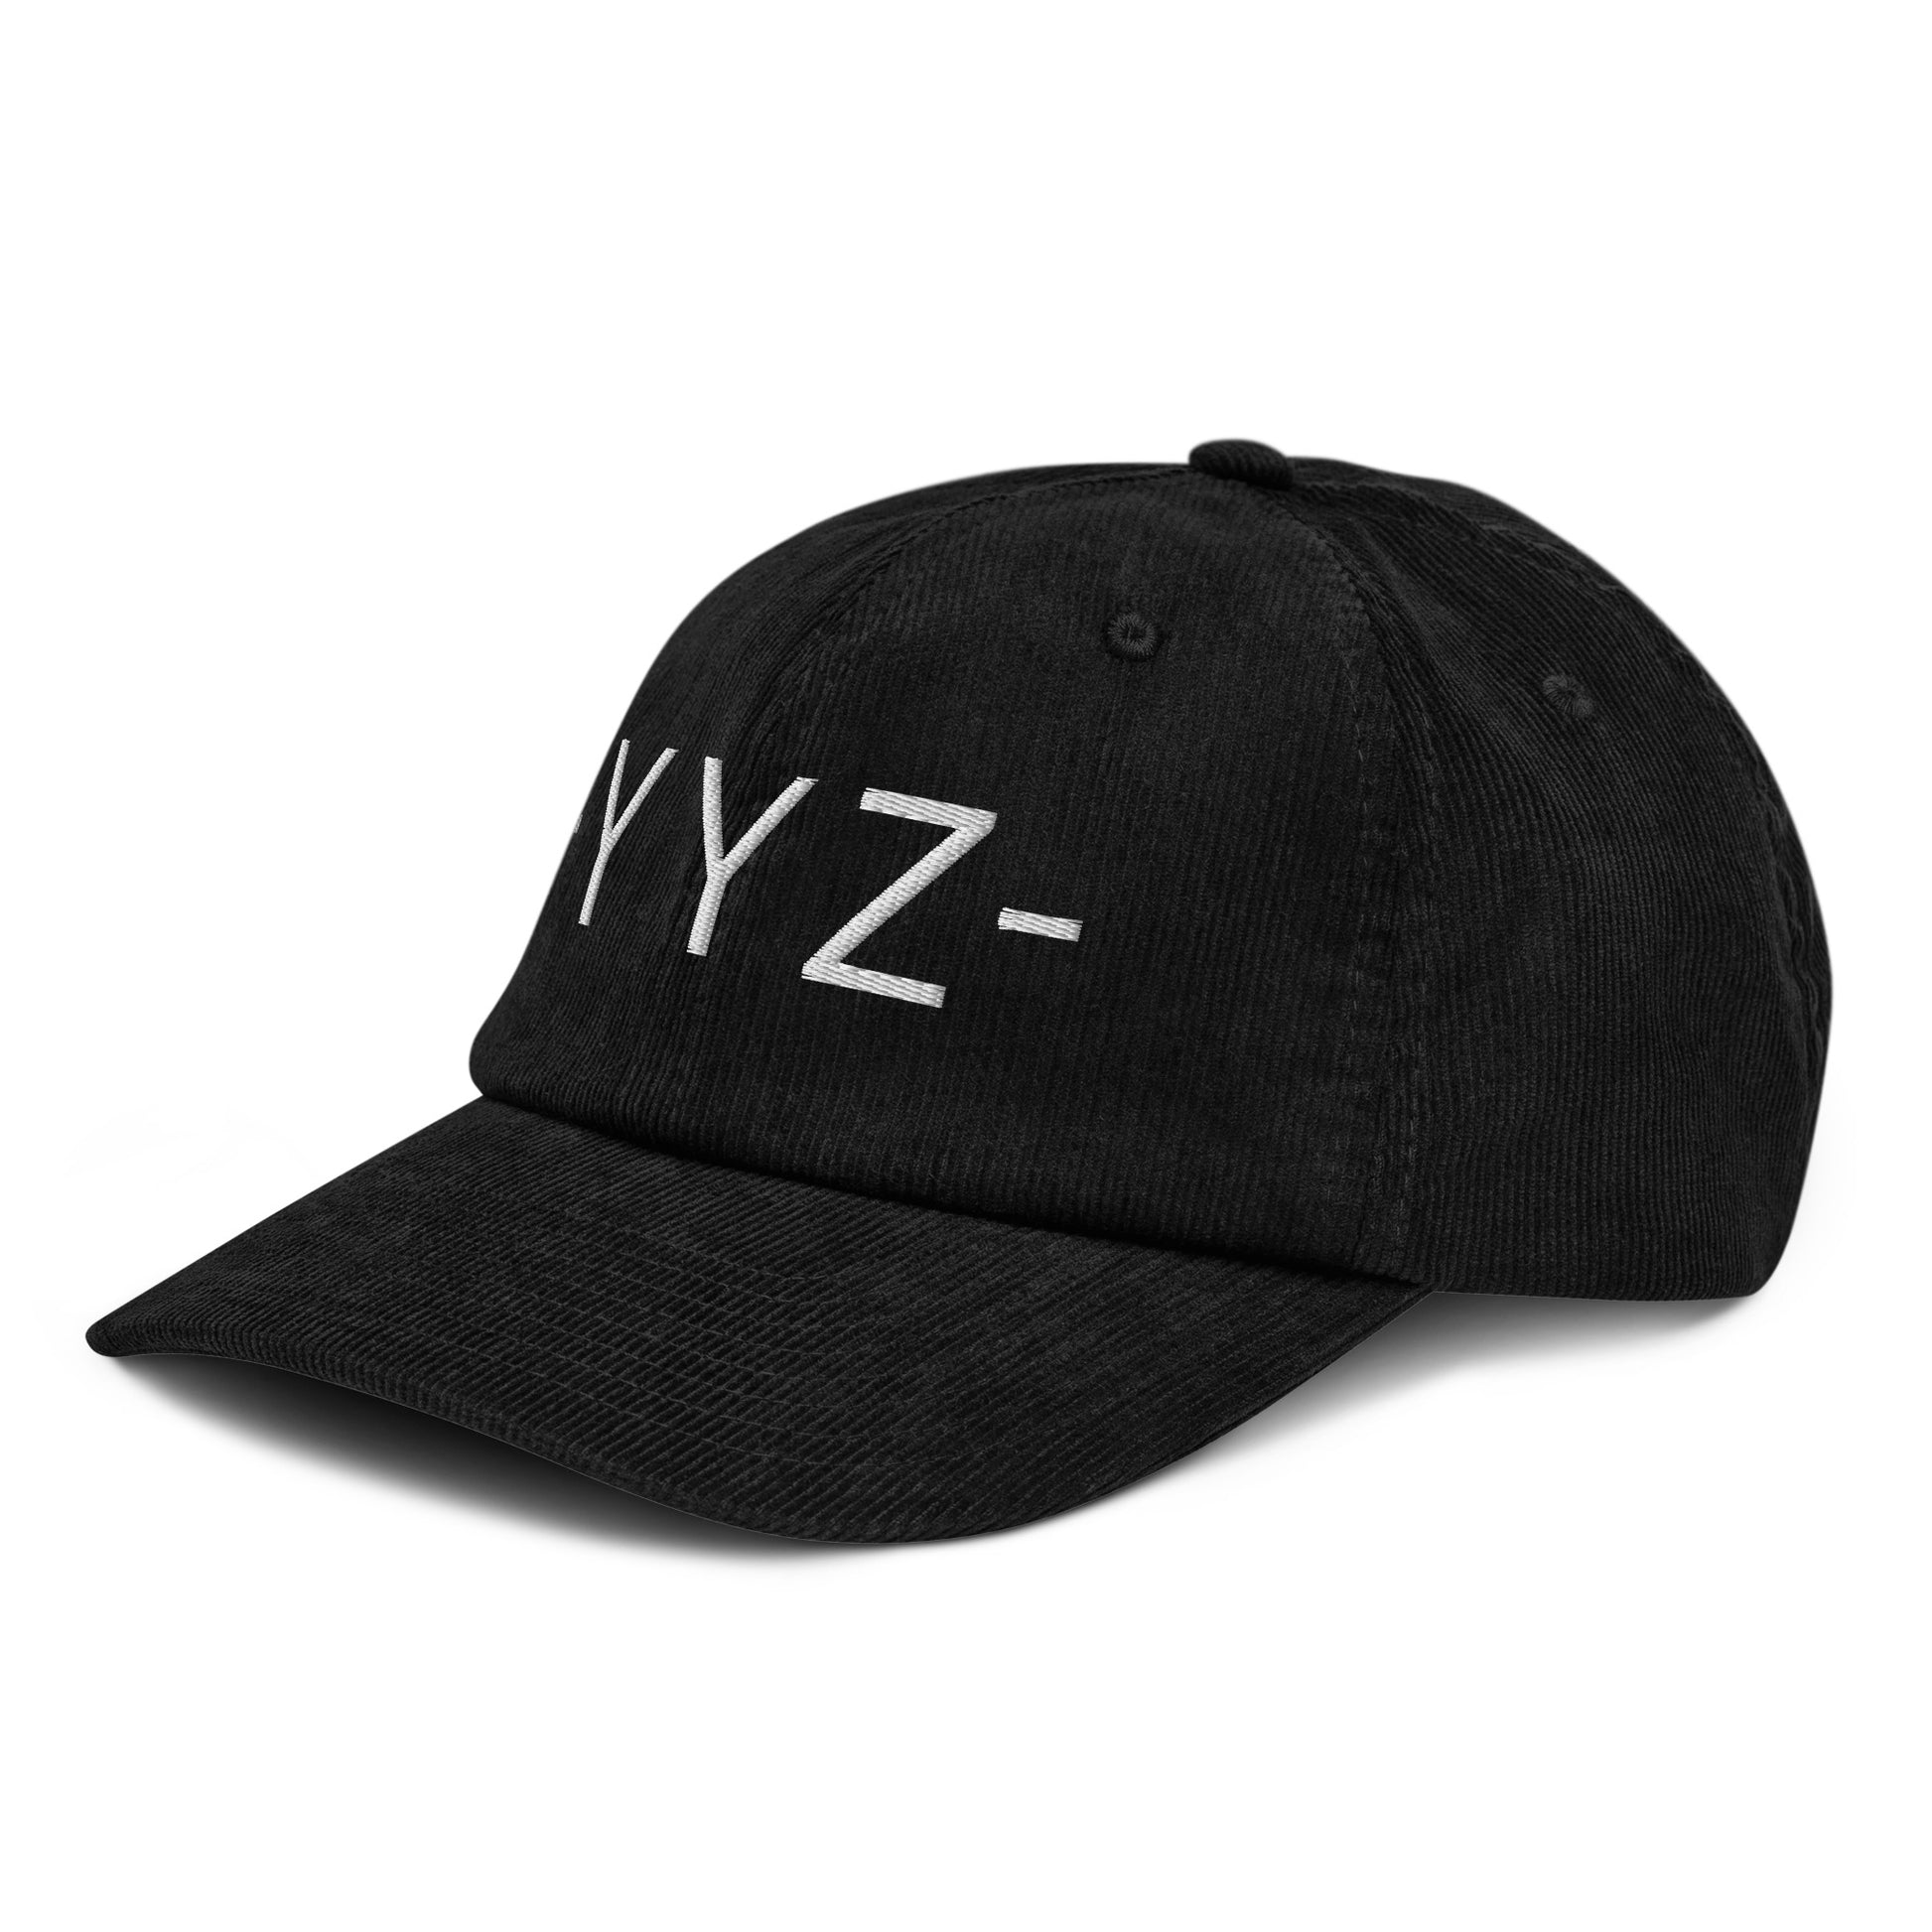 Souvenir Corduroy Hat - White • YYZ Toronto • YHM Designs - Image 14